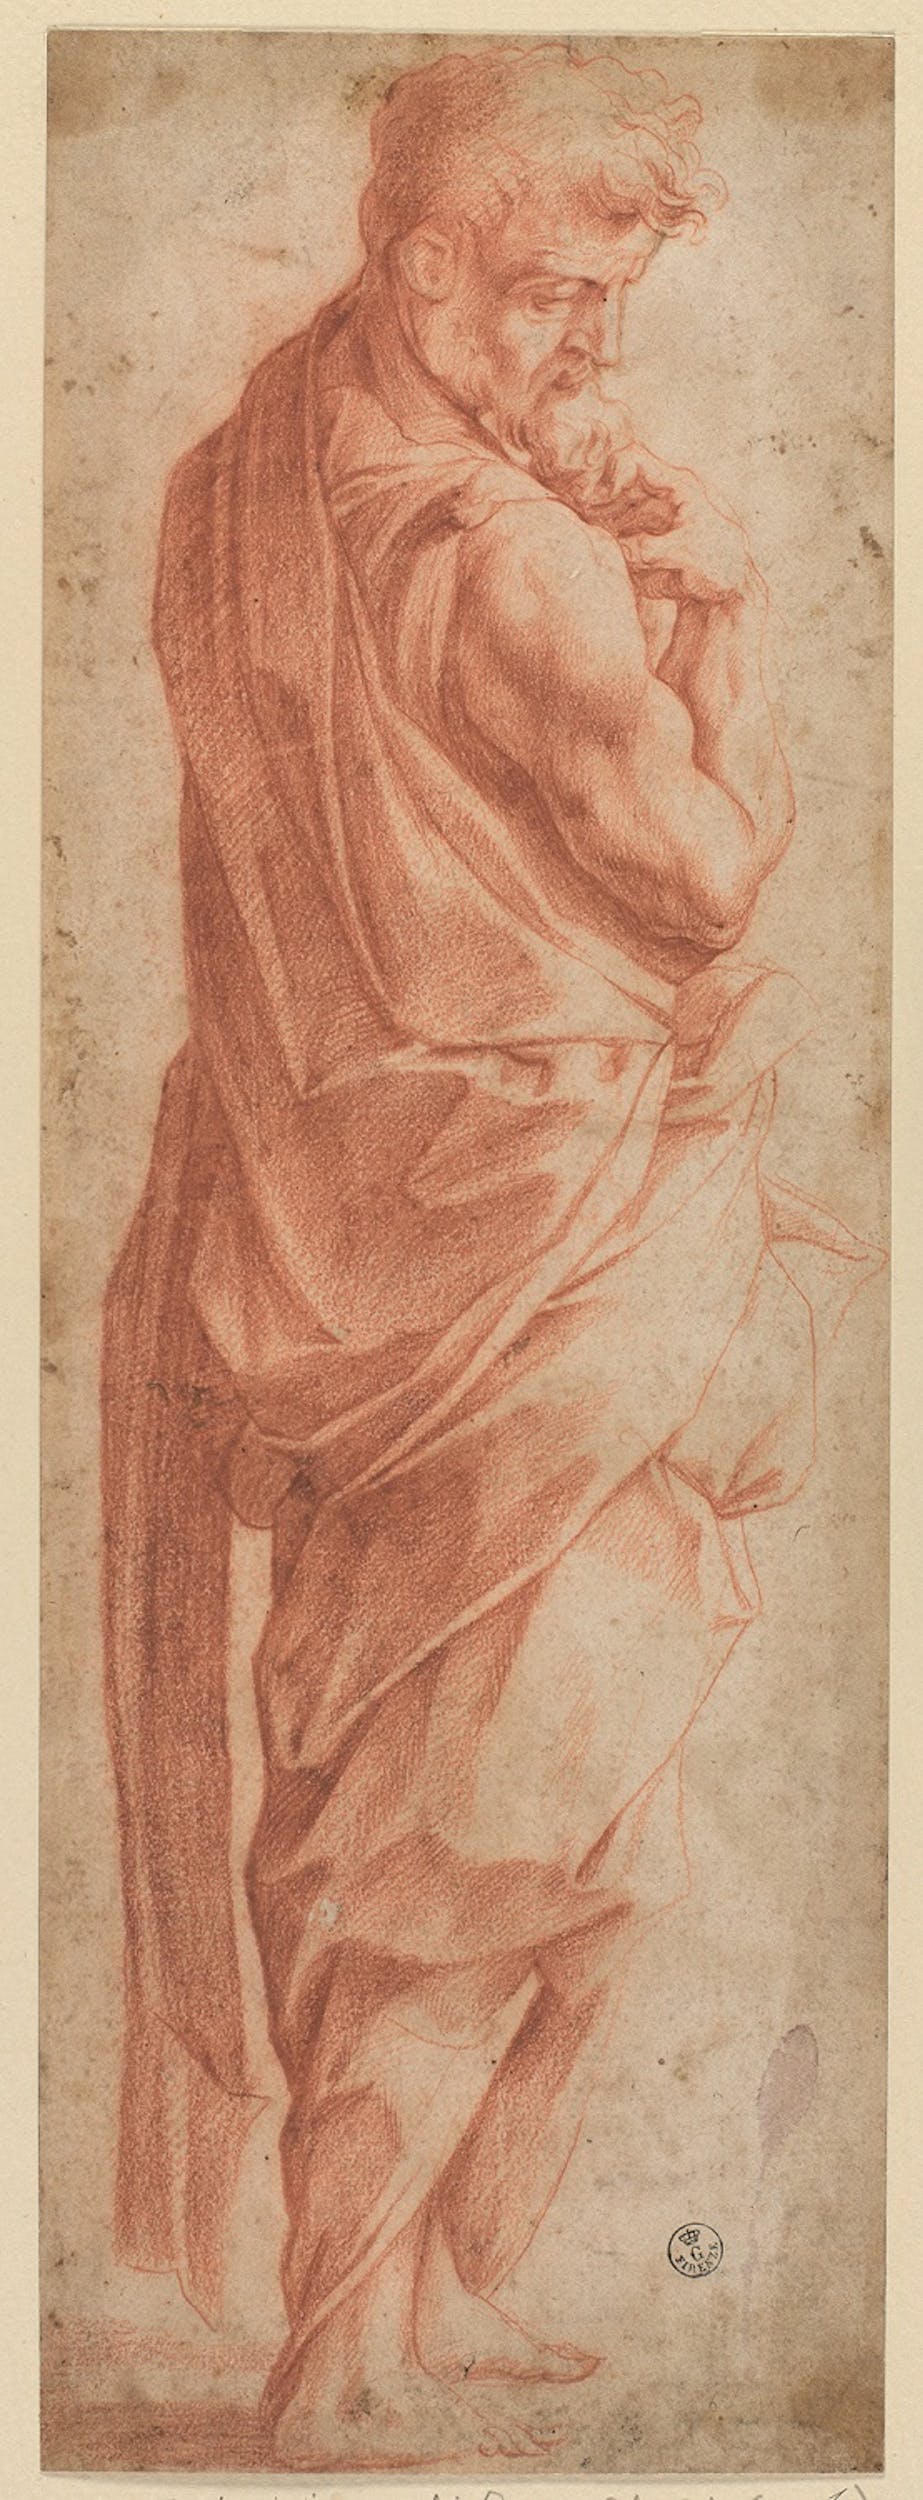 Giorgio Vasari (Arezzo, 1511 - Firenze, 1574) Figura maschile 1539-1540 pietra rossa, carta Gabinetto dei Disegni e delle Stampe, Gallerie degli Uffizi, Firenze